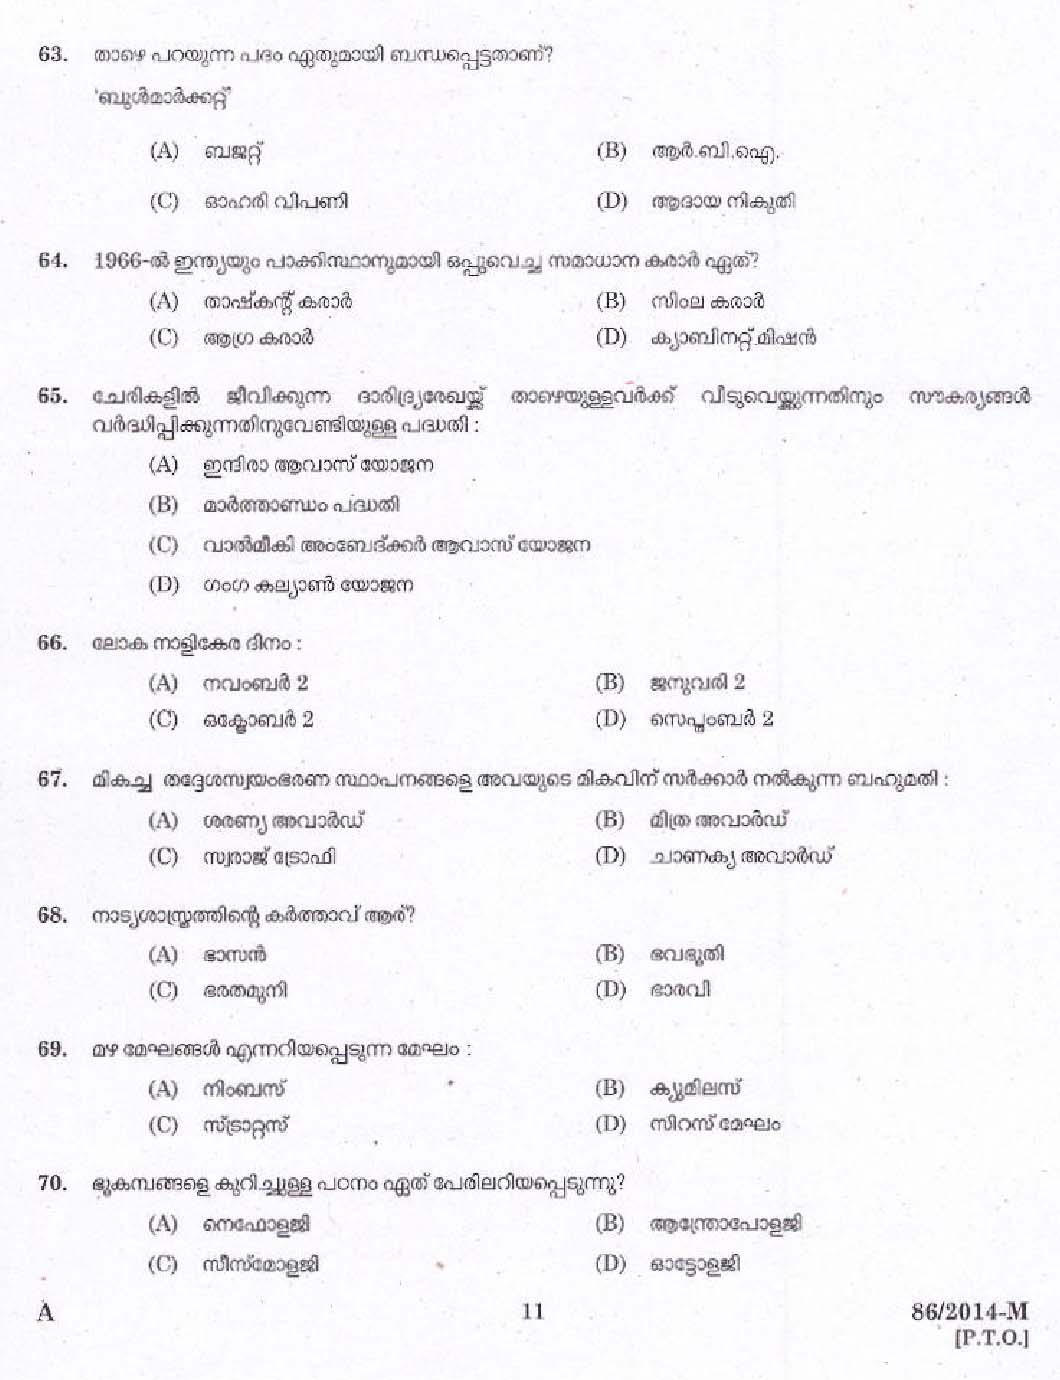 KPSC Village Extension Officer Grade II Exam 2014 Code 862014 M 9